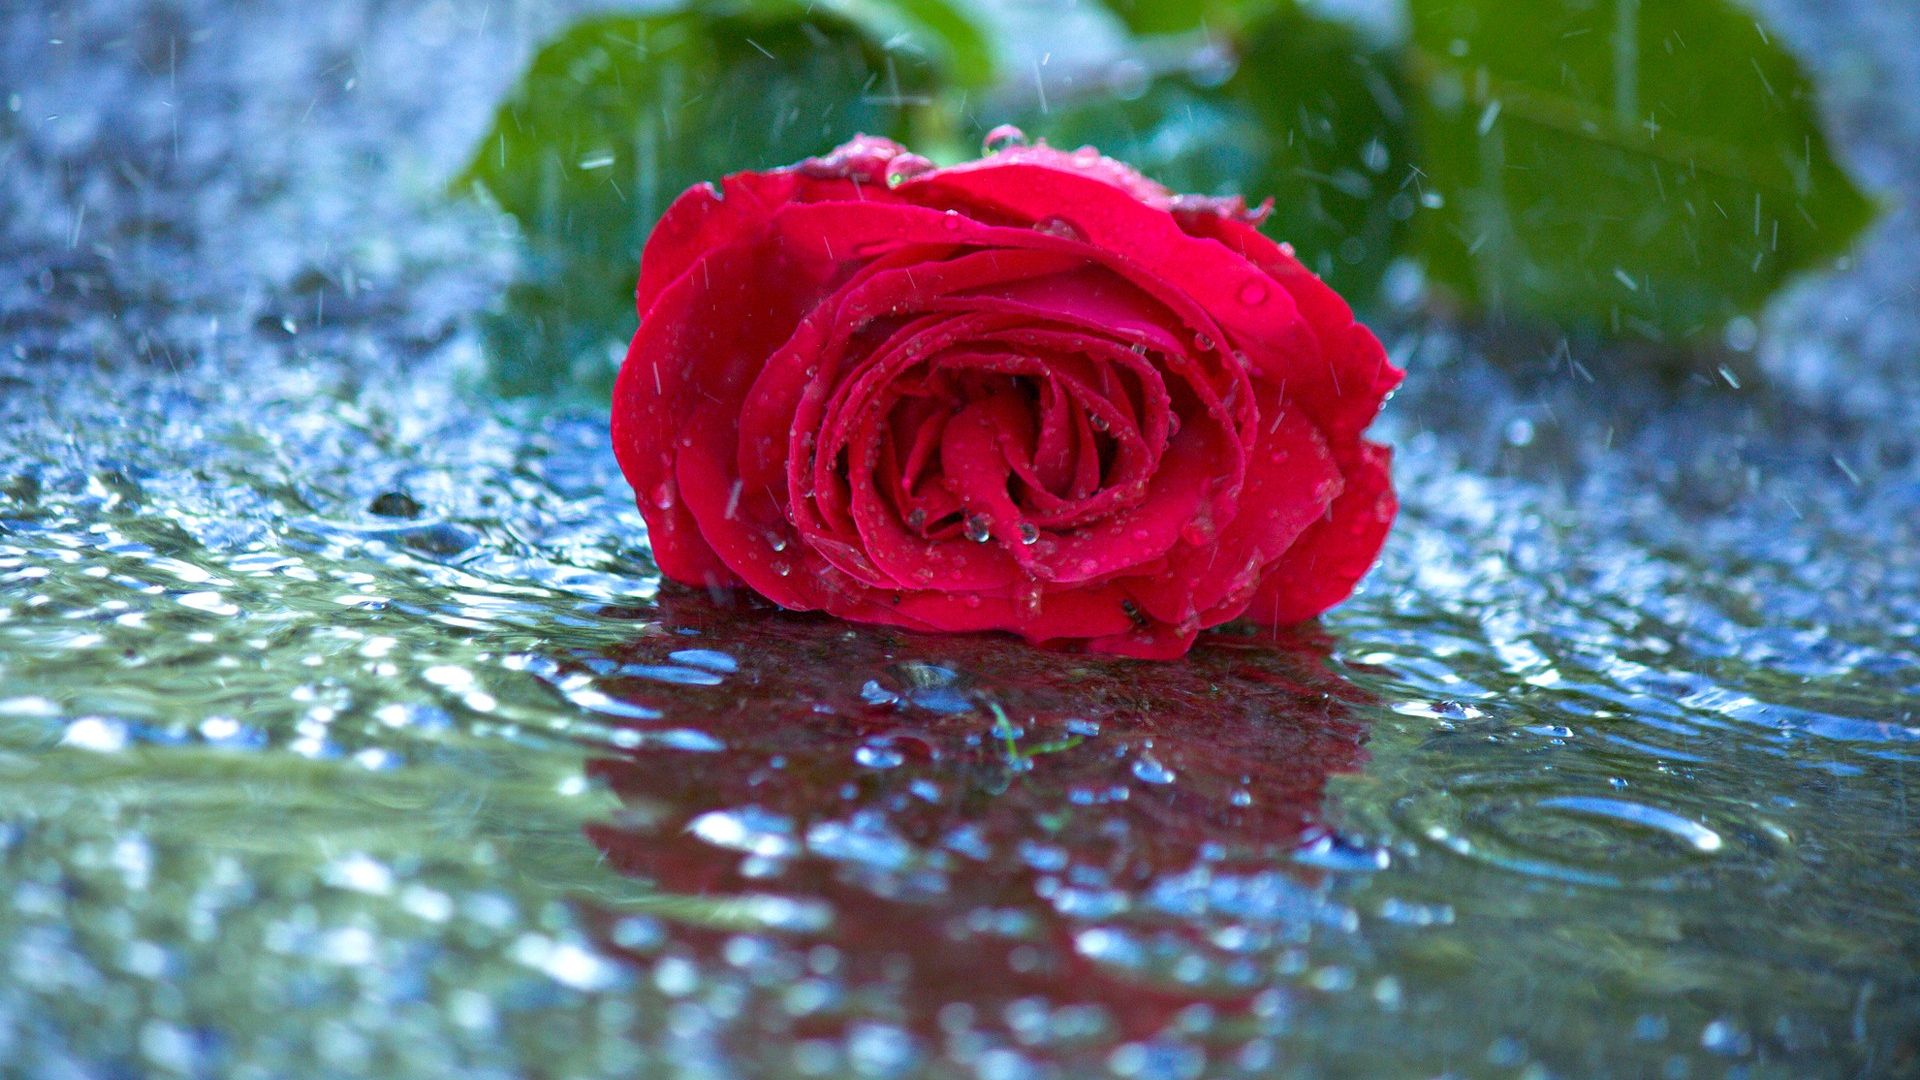 Red Rose In Water - Beautiful Rose In Rain - HD Wallpaper 